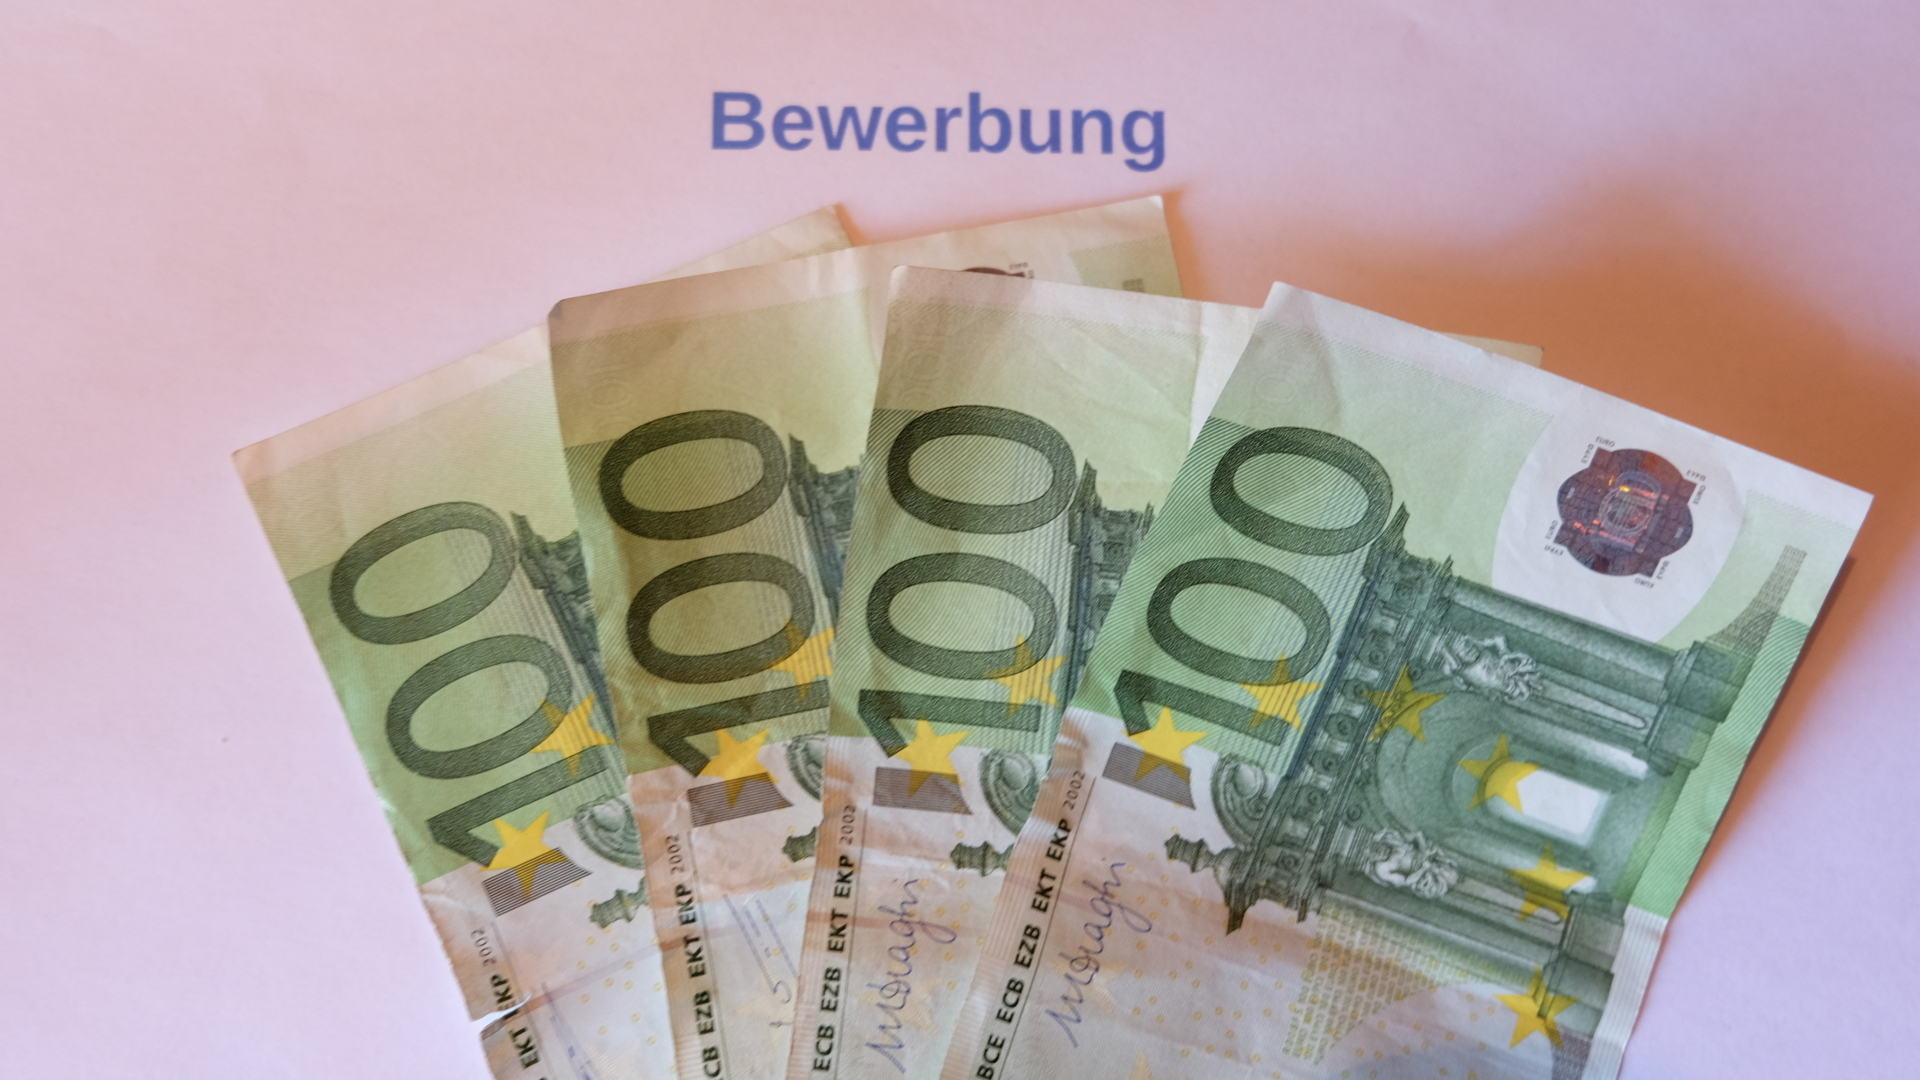 Bewerbungsgebühr-100 Euro Scheine-Geld-Bewerbungsschreiben.